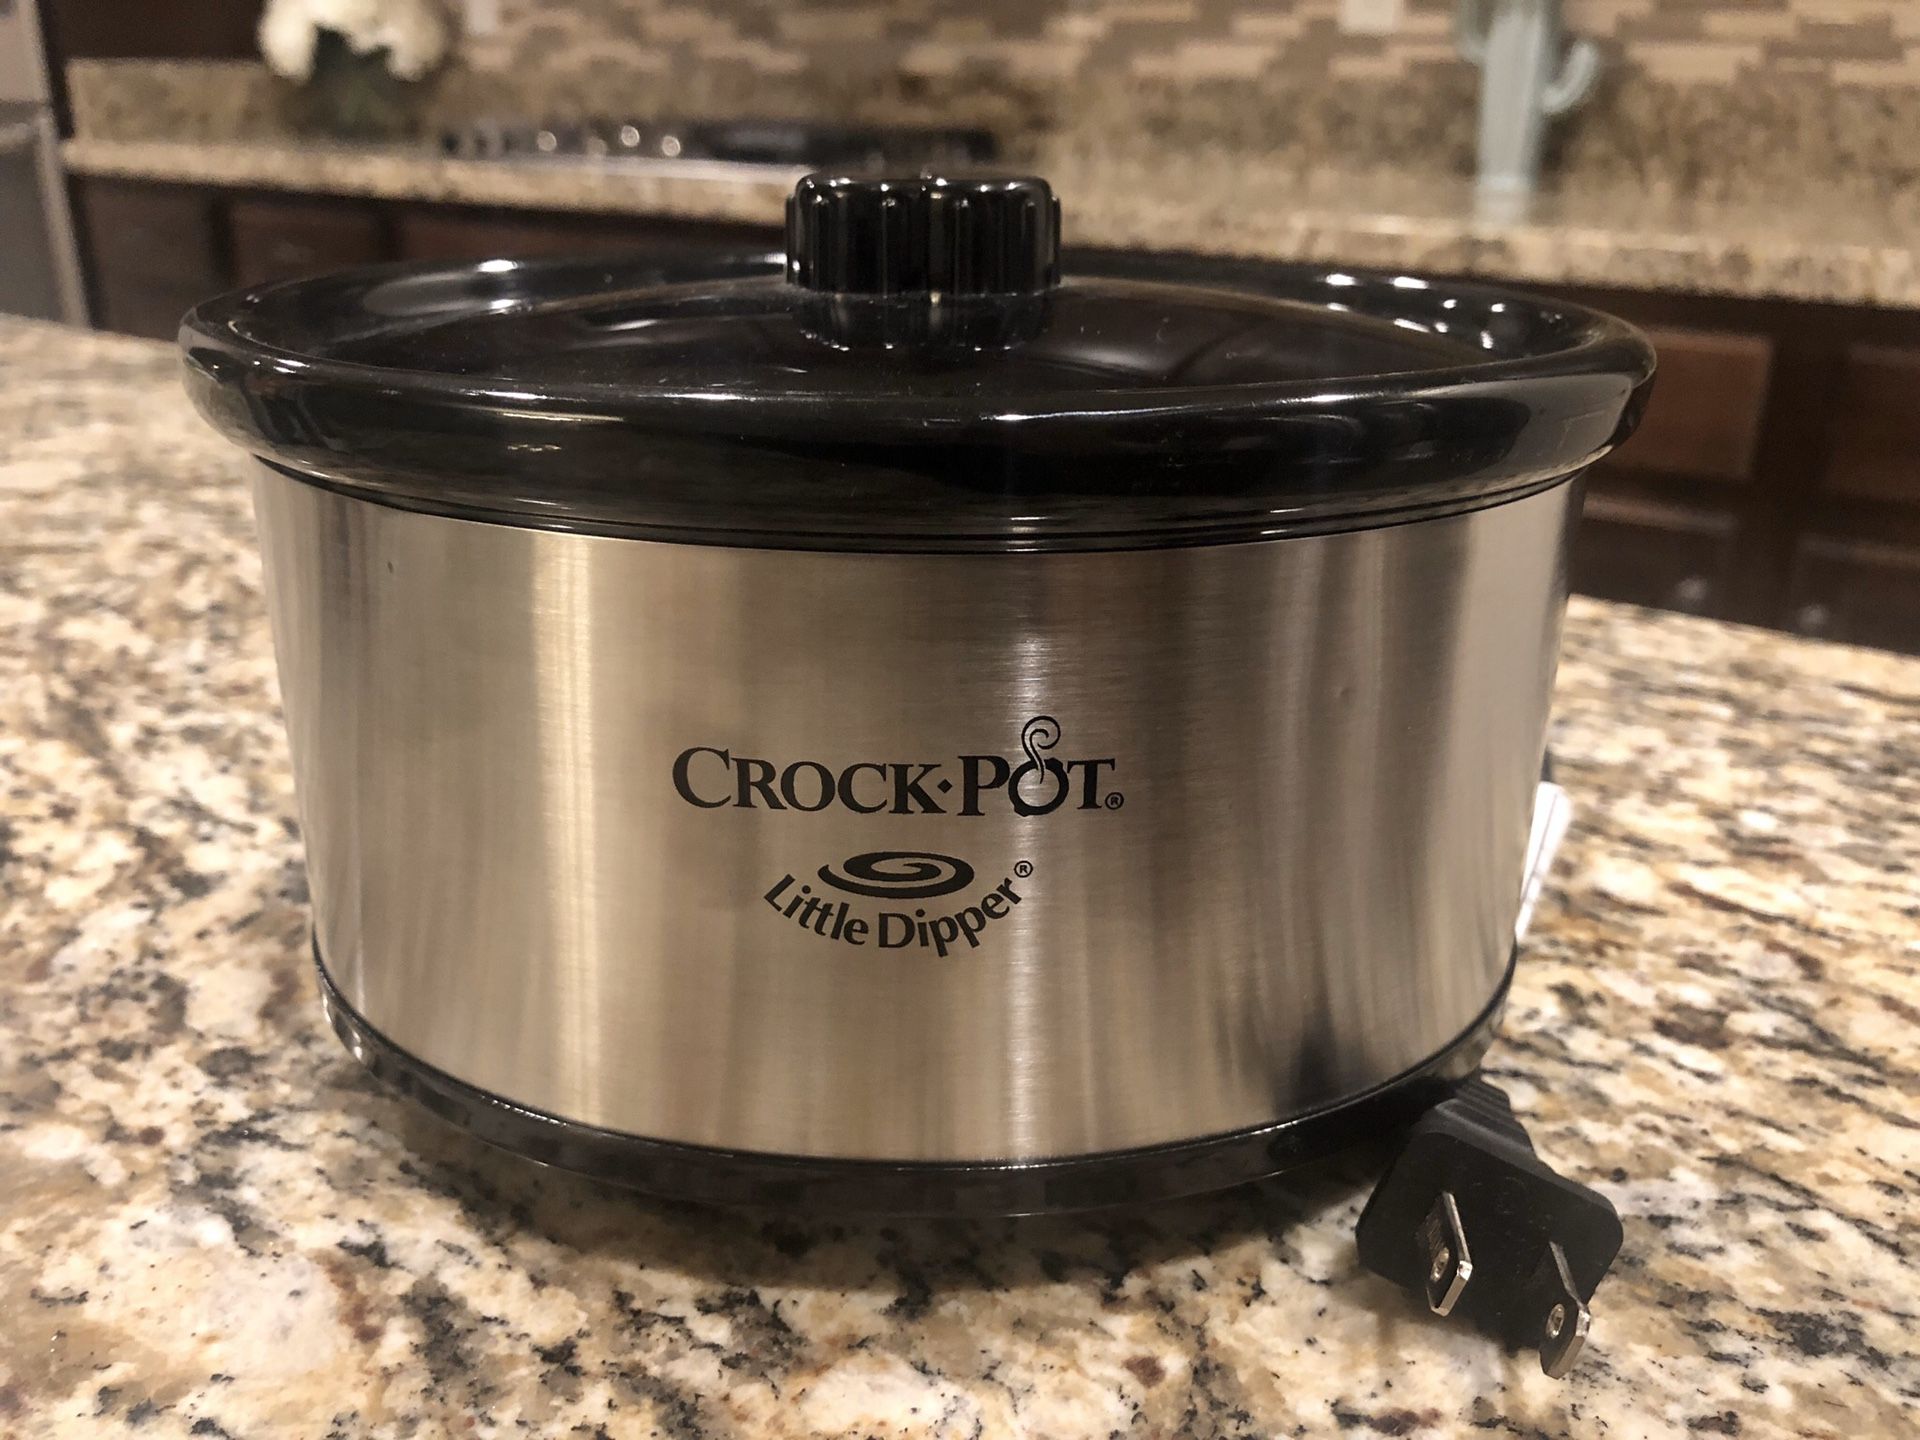 Crock pot Little Dipper